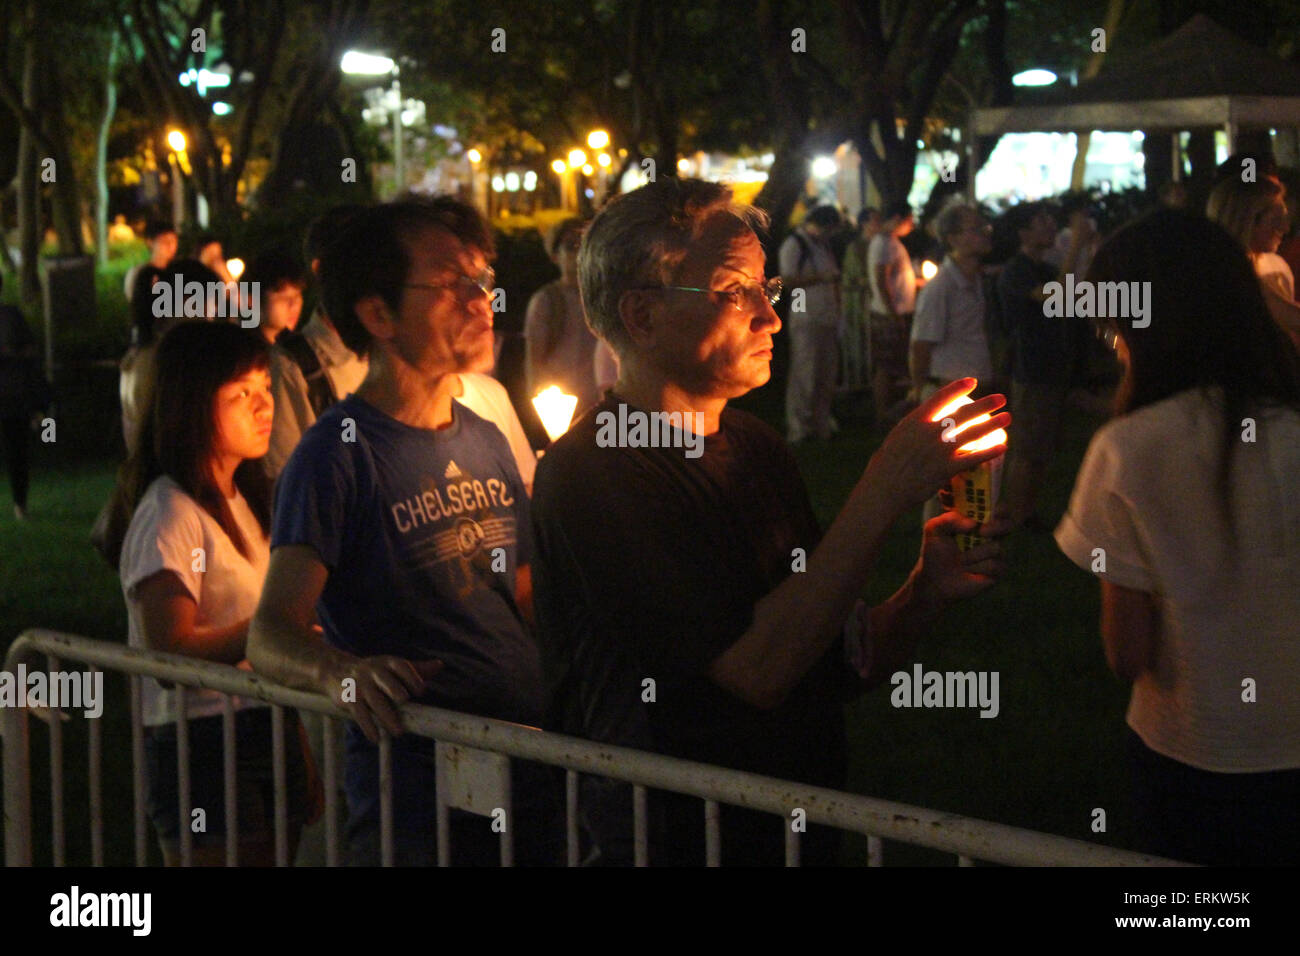 Des dizaines de milliers d'Hong Kong, les gens se sont réunis à Hong Kong's Victoria Park pour marquer le 26e anniversaire de la place Tienanmen. La veille, le 4 juin, est un événement annuel. © Robert SC Kemp/Alamy Live News Banque D'Images